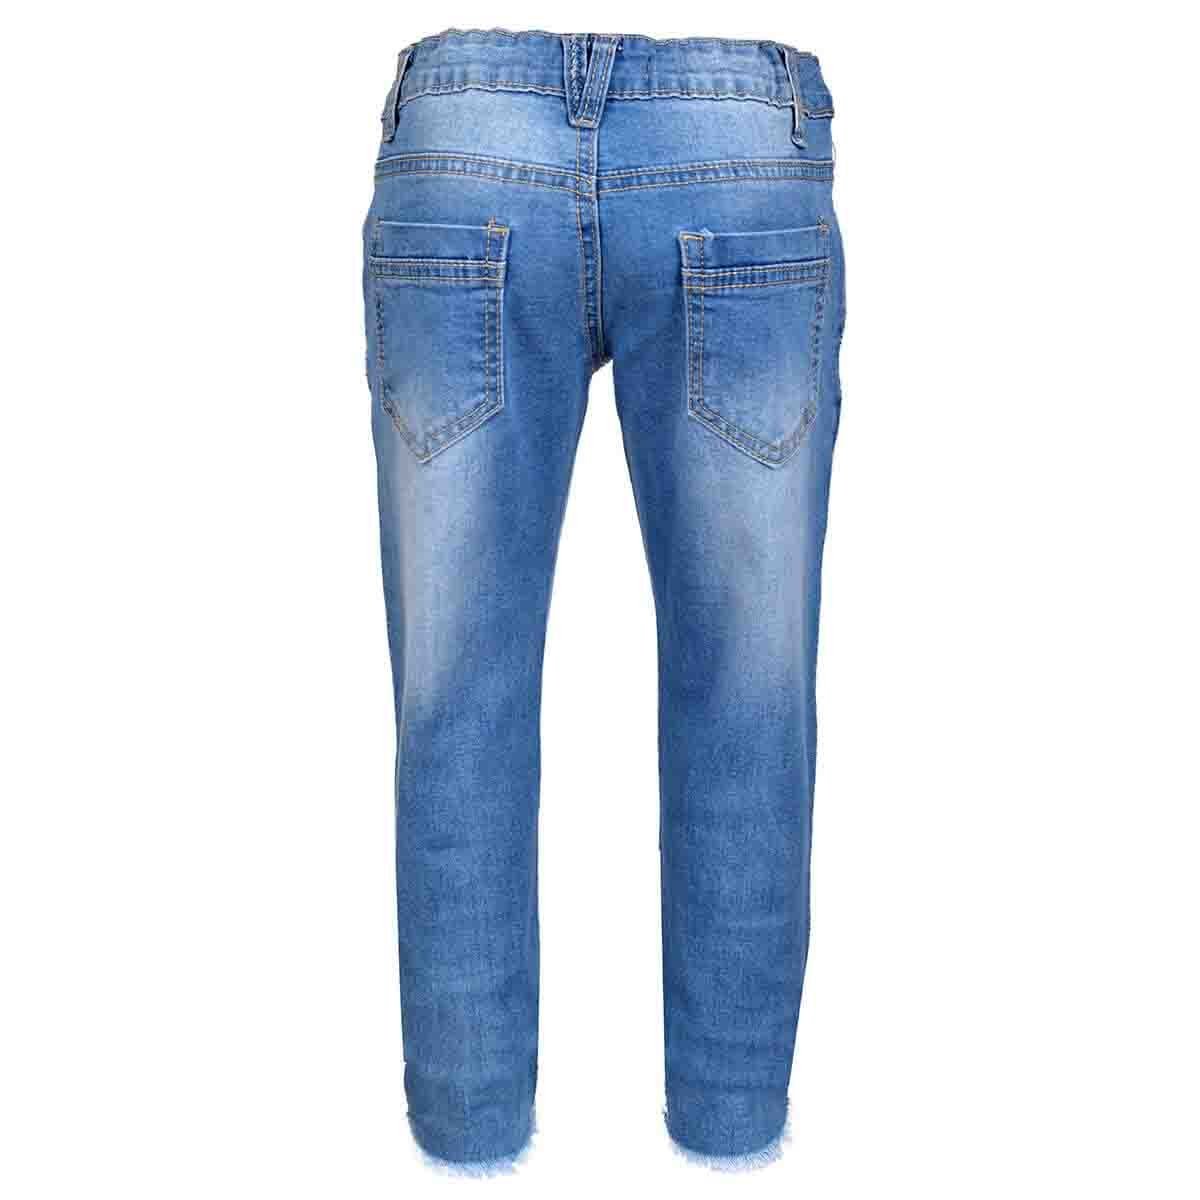 Jeans Entubados con Aplicaci&oacute;n y Desgarre Philosophy Jr Girls para Ni&ntilde;a